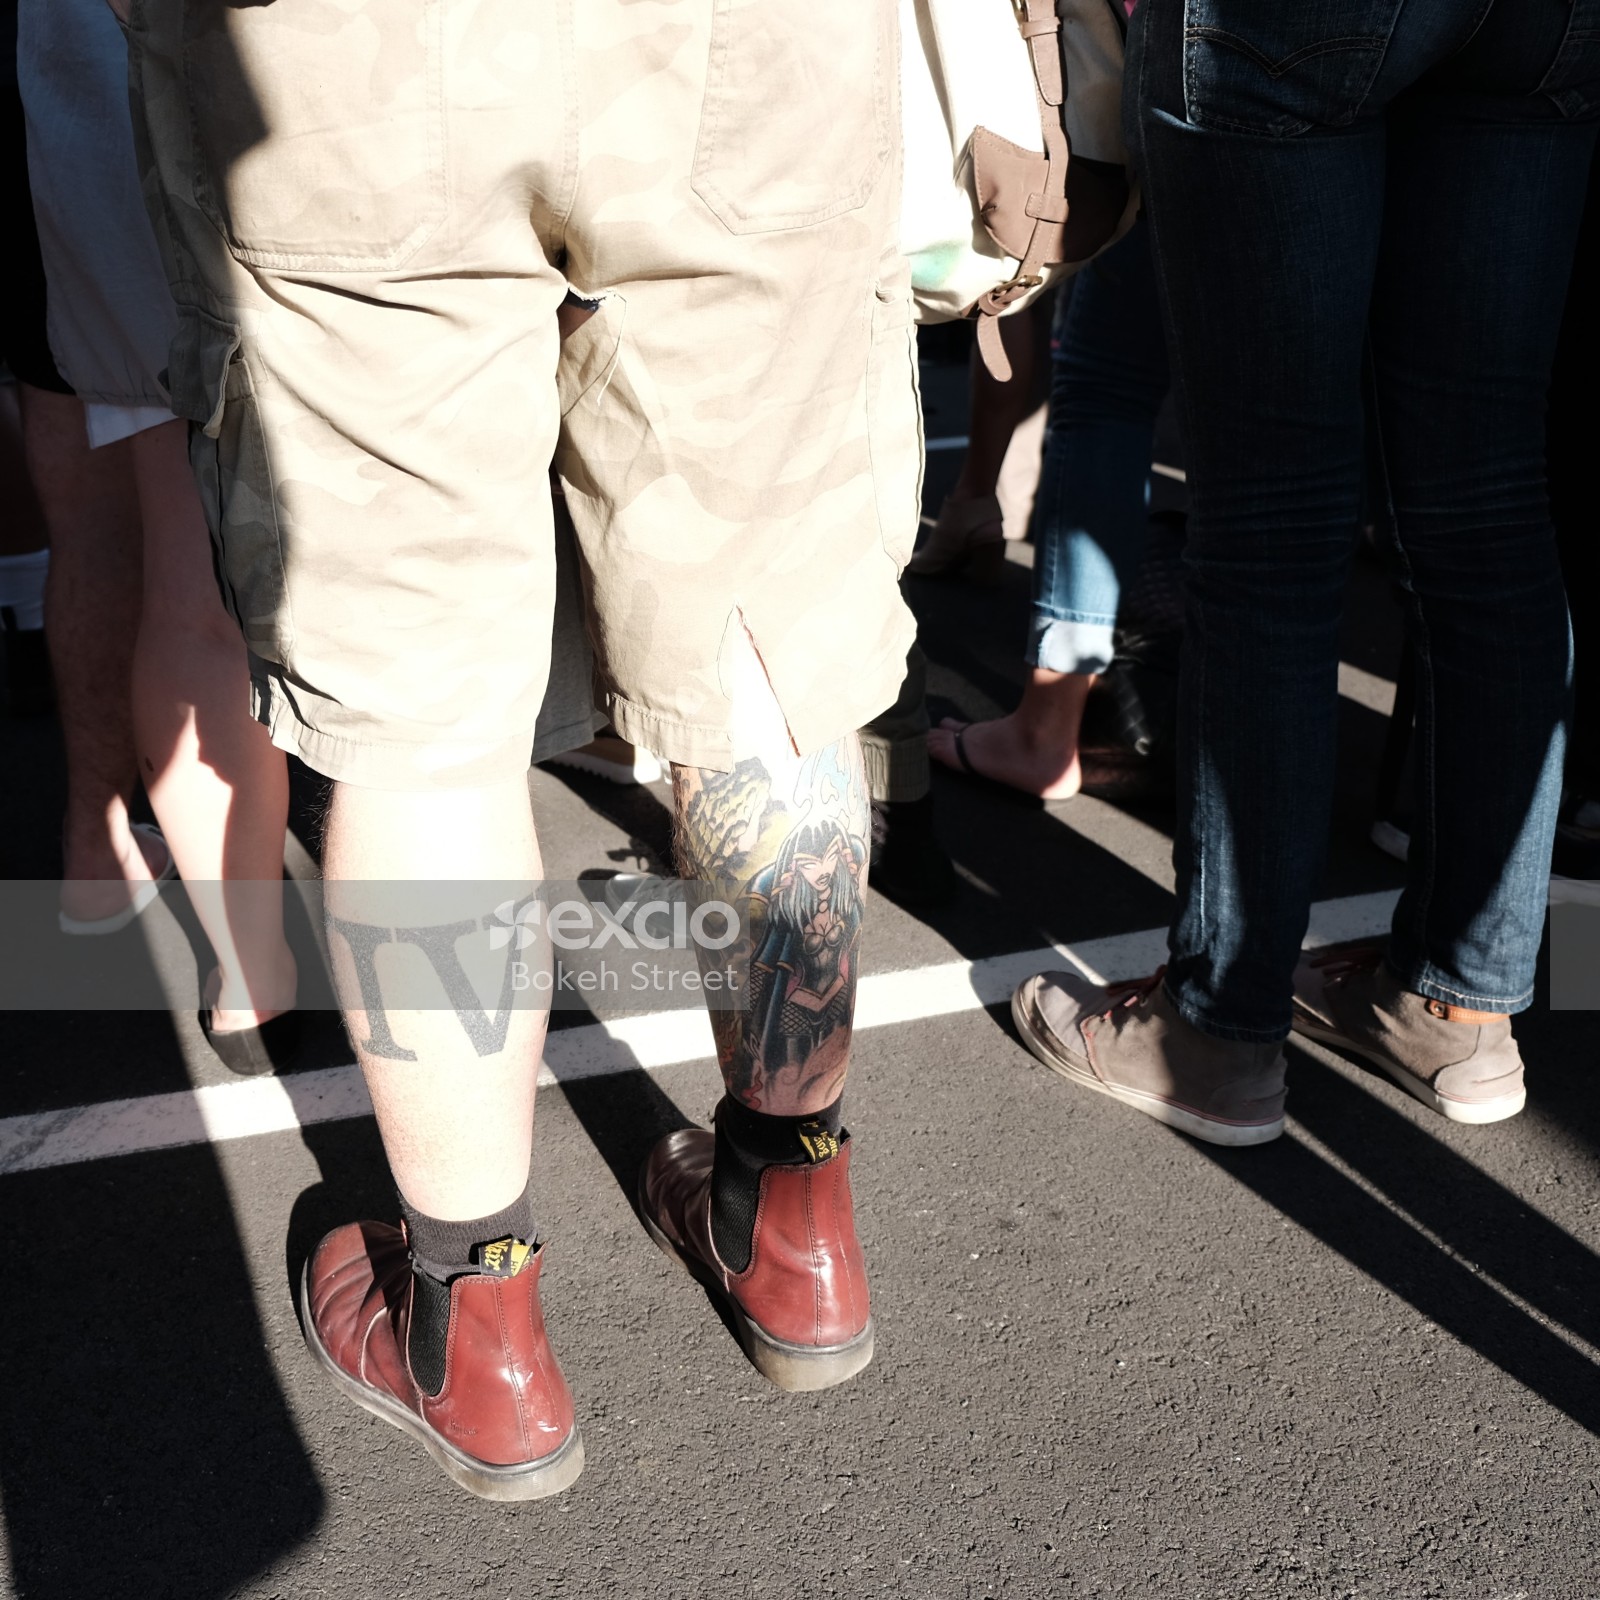 Tattooed legs